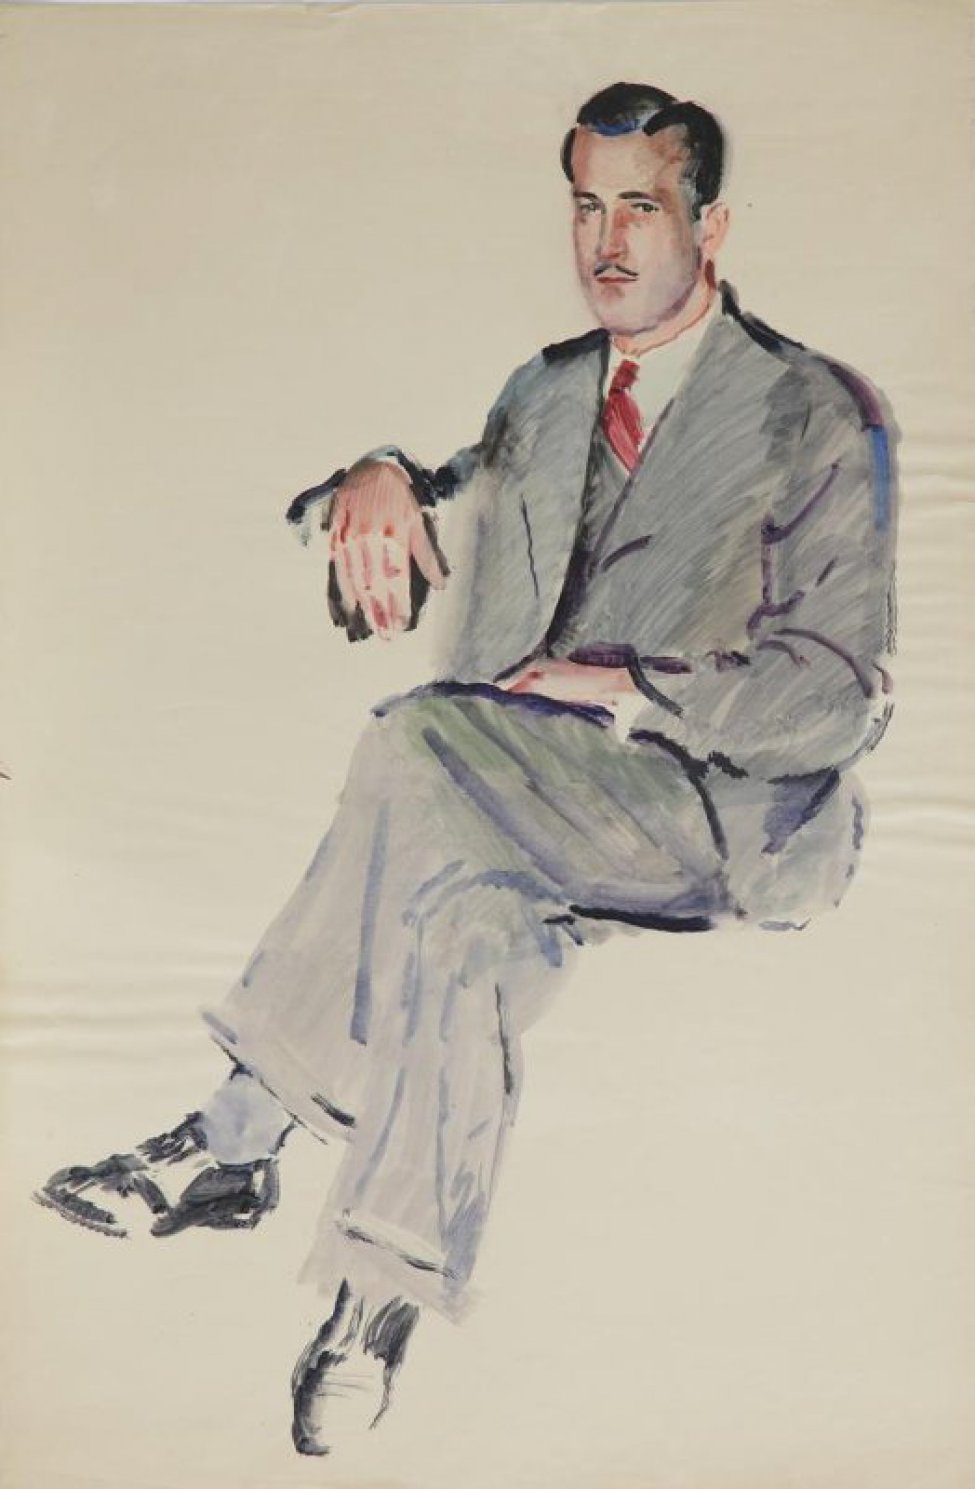 Изображен молодой мужчина, сидящий в 1/4 правом повороте; серый костюм, светлая рубашка, темно-вишневый галстук.